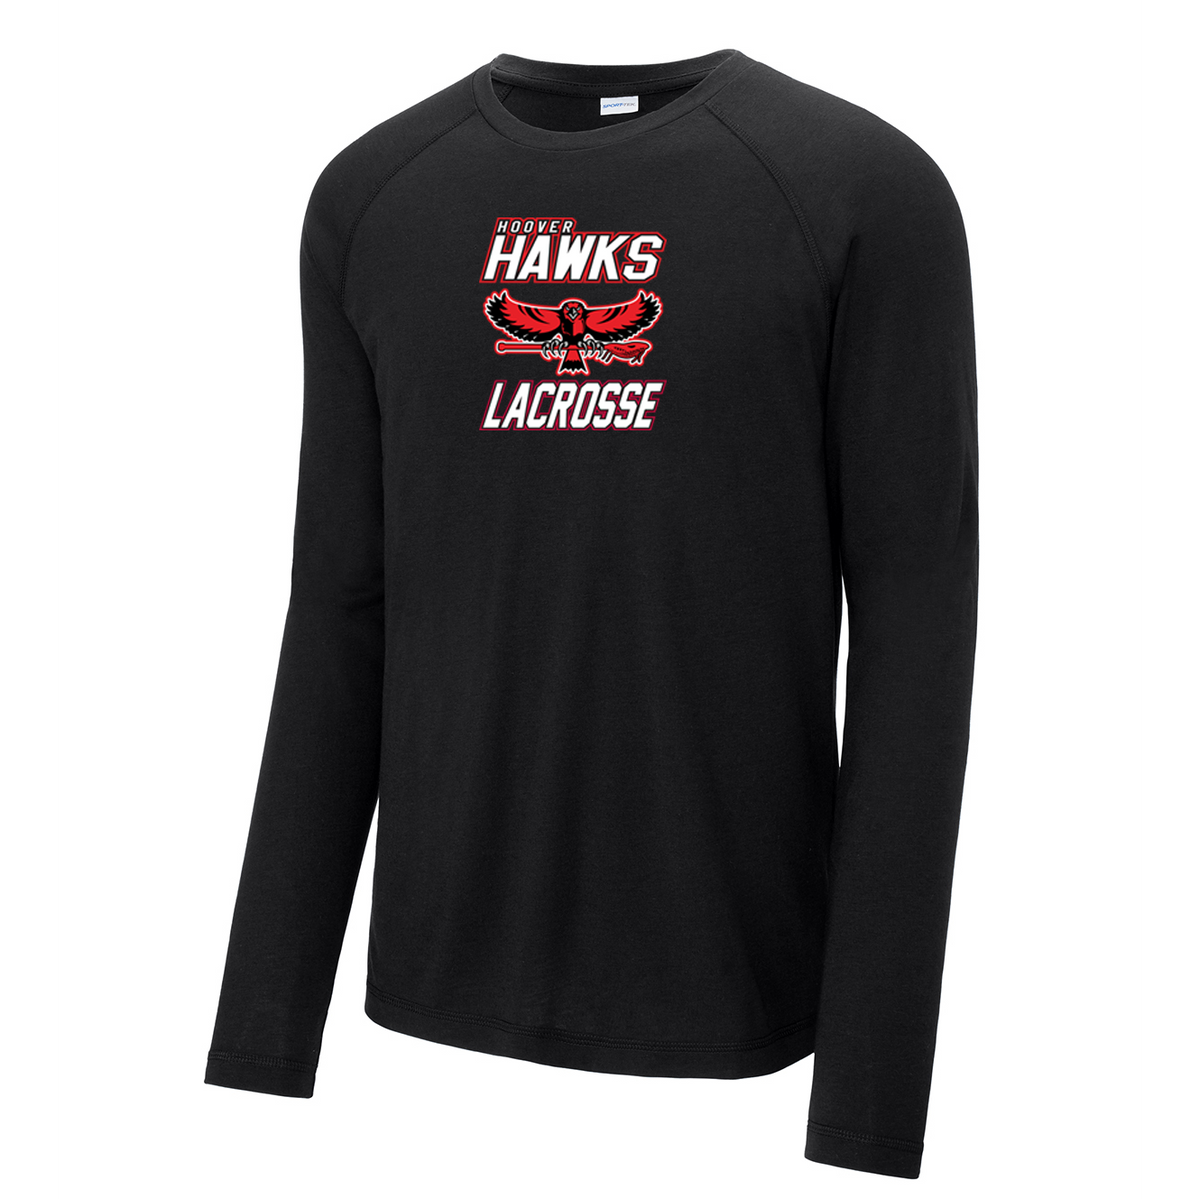 Hawks Lacrosse Long Sleeve Raglan CottonTouch